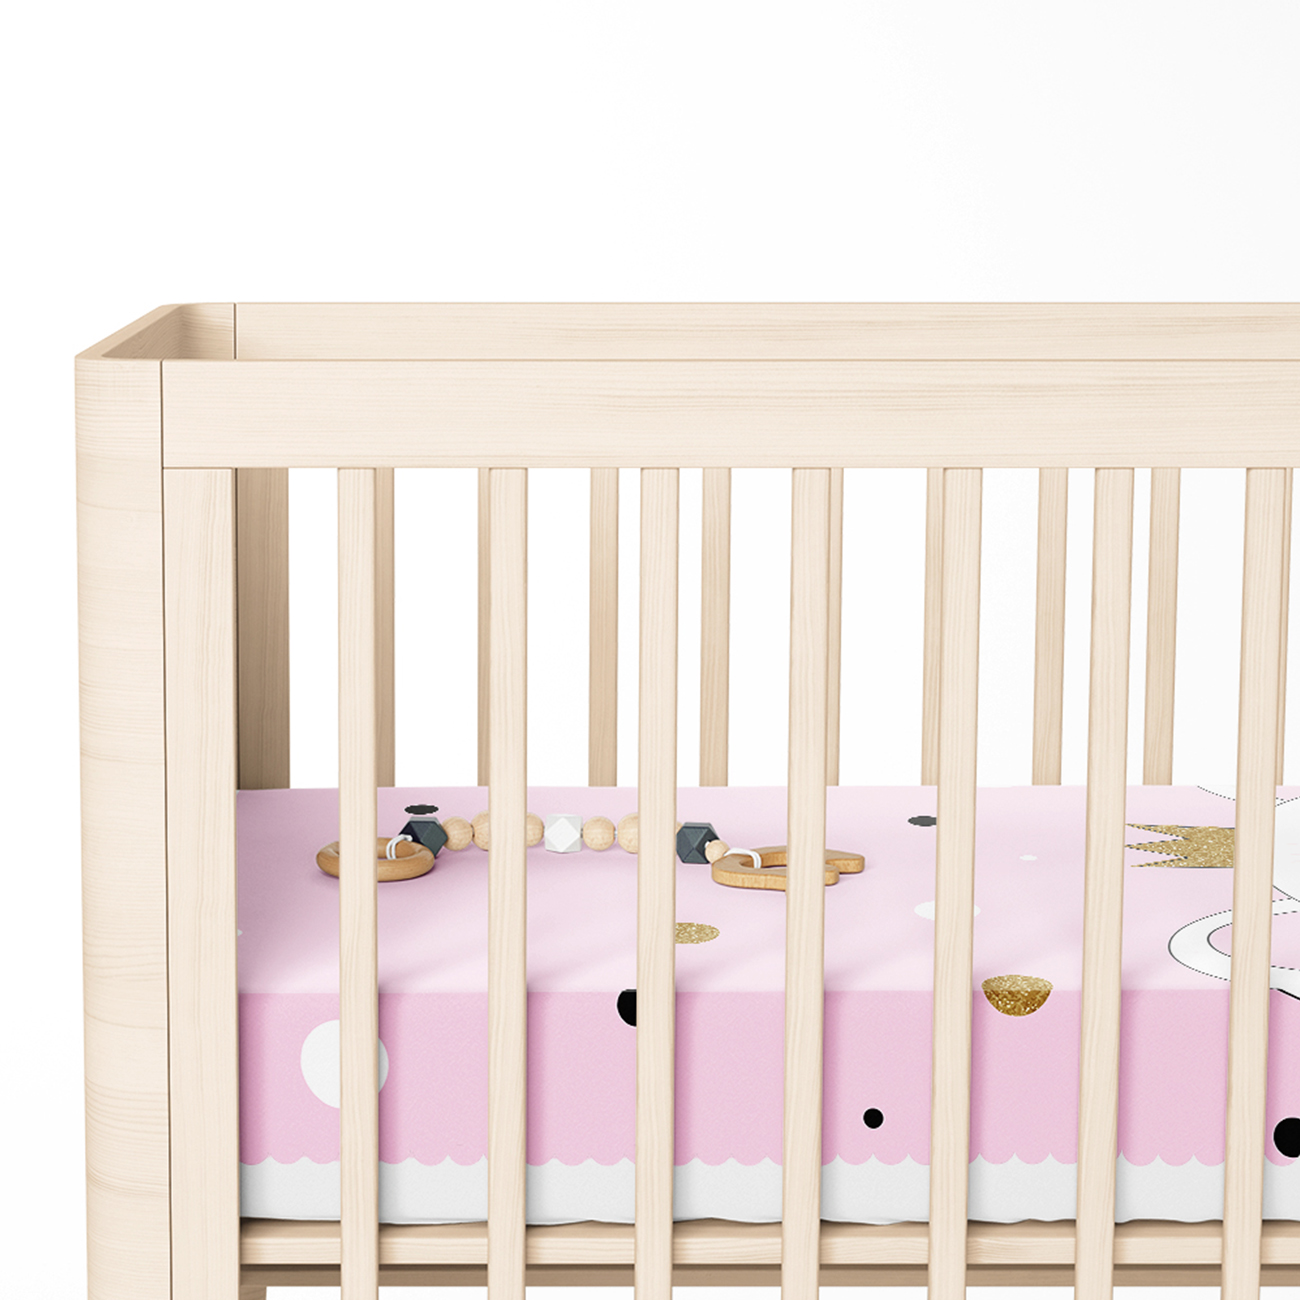 Renkli Puanlı Kedicik Desenli Bebek Odası Yatak Örtüsü Toptan Masa Örtüsü